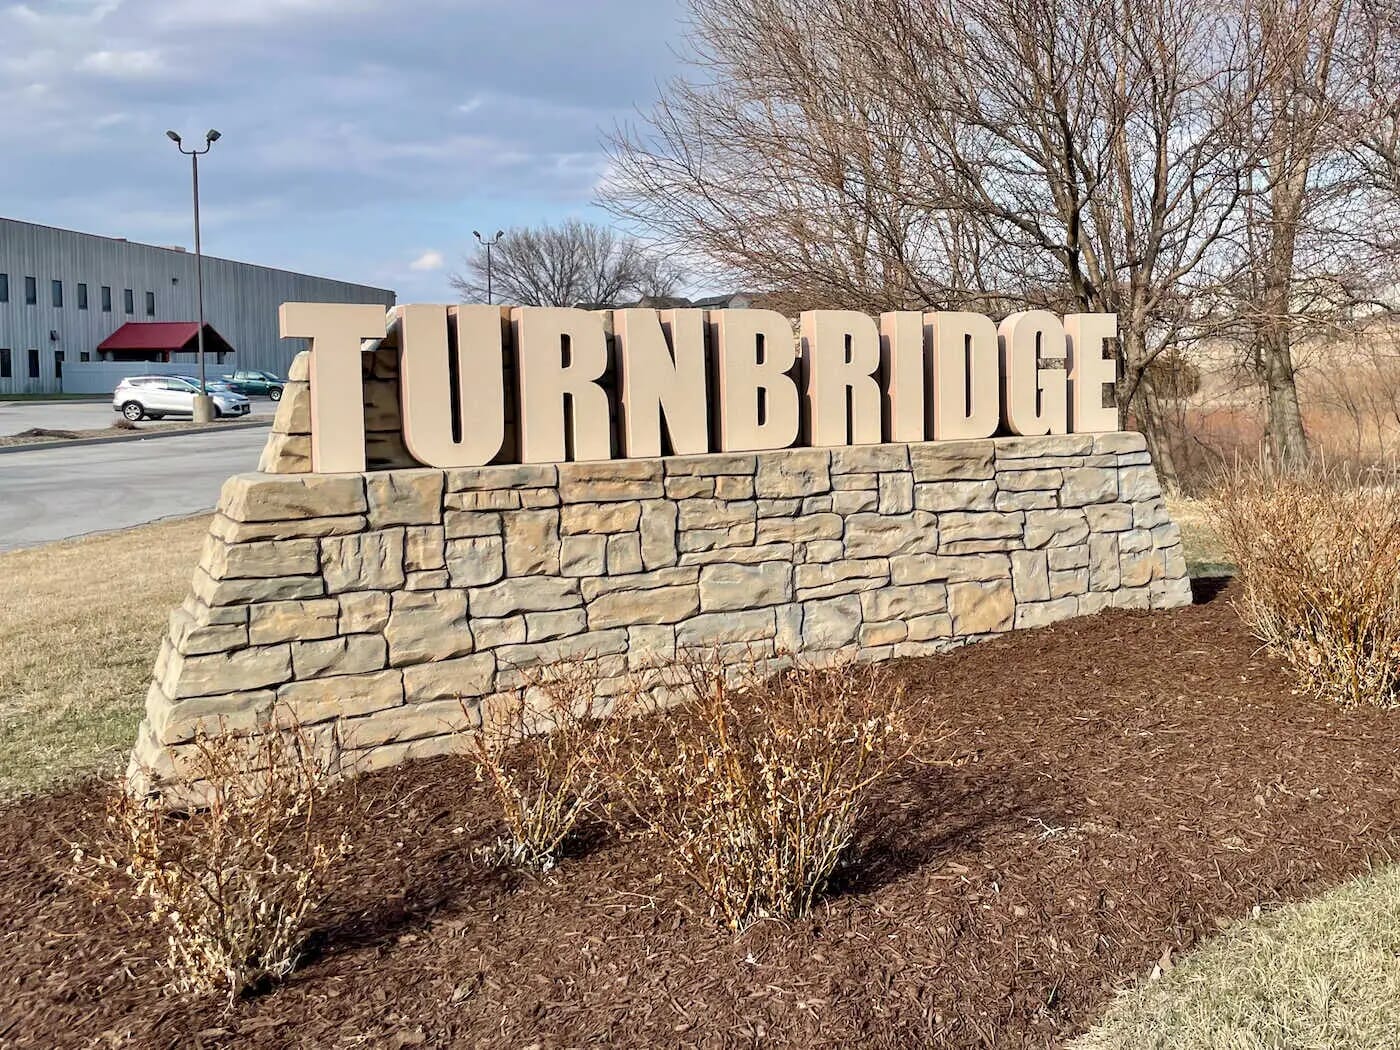 Turnbridge Neighborhood - Omaha, Nebraska